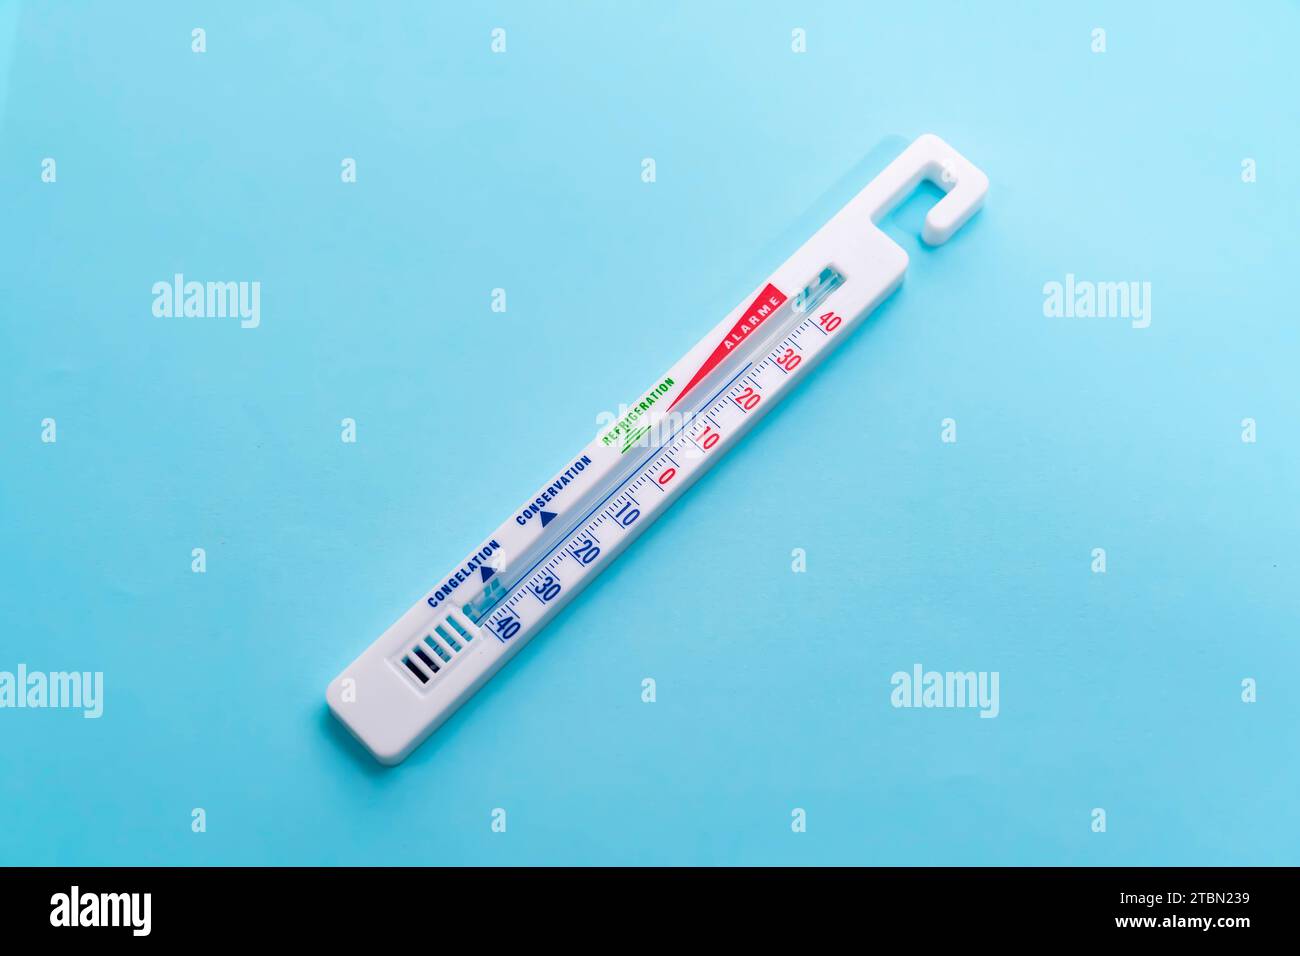 Thermometer hängt auf blauem Hintergrund Stockfoto